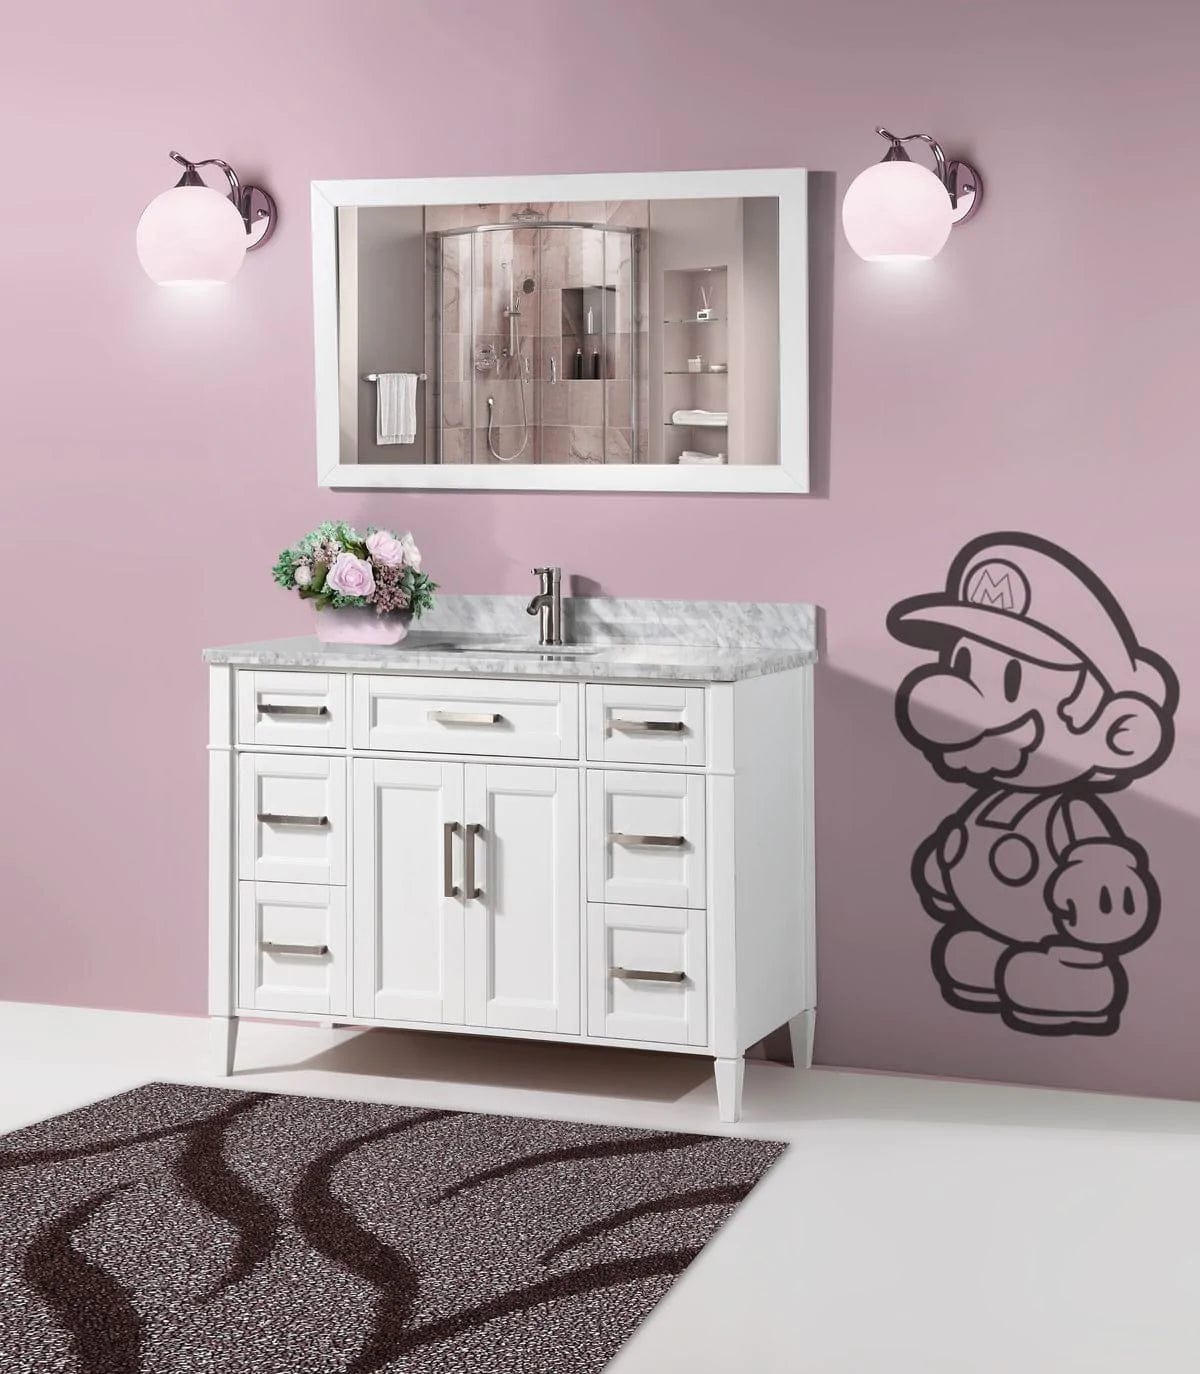 60 in. Single Sink Bathroom Vanity Set in White ,Carrara Marble Stone Top - Decohub Home